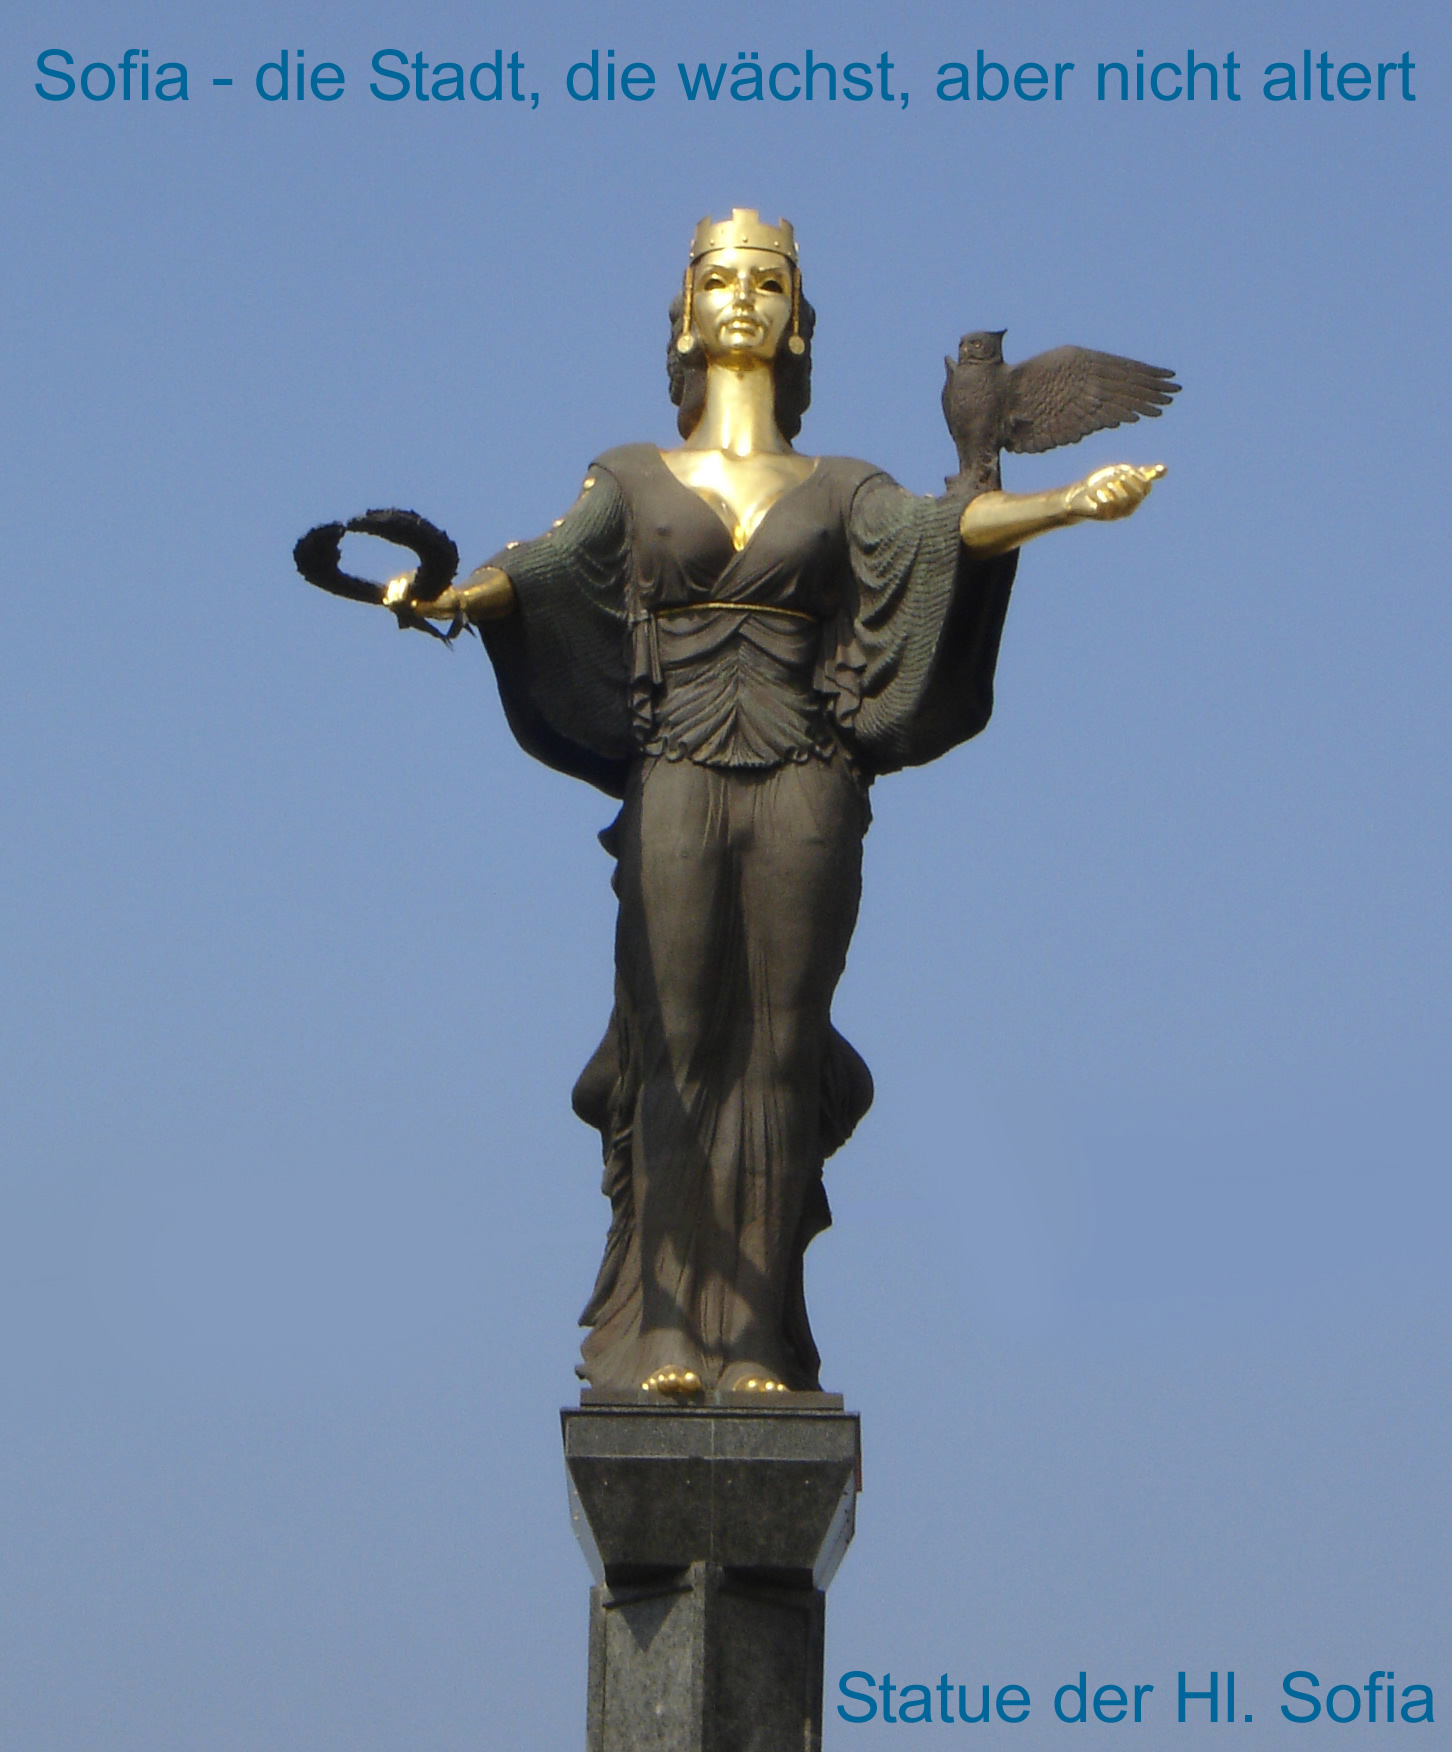 Statue der Hl. Sofia